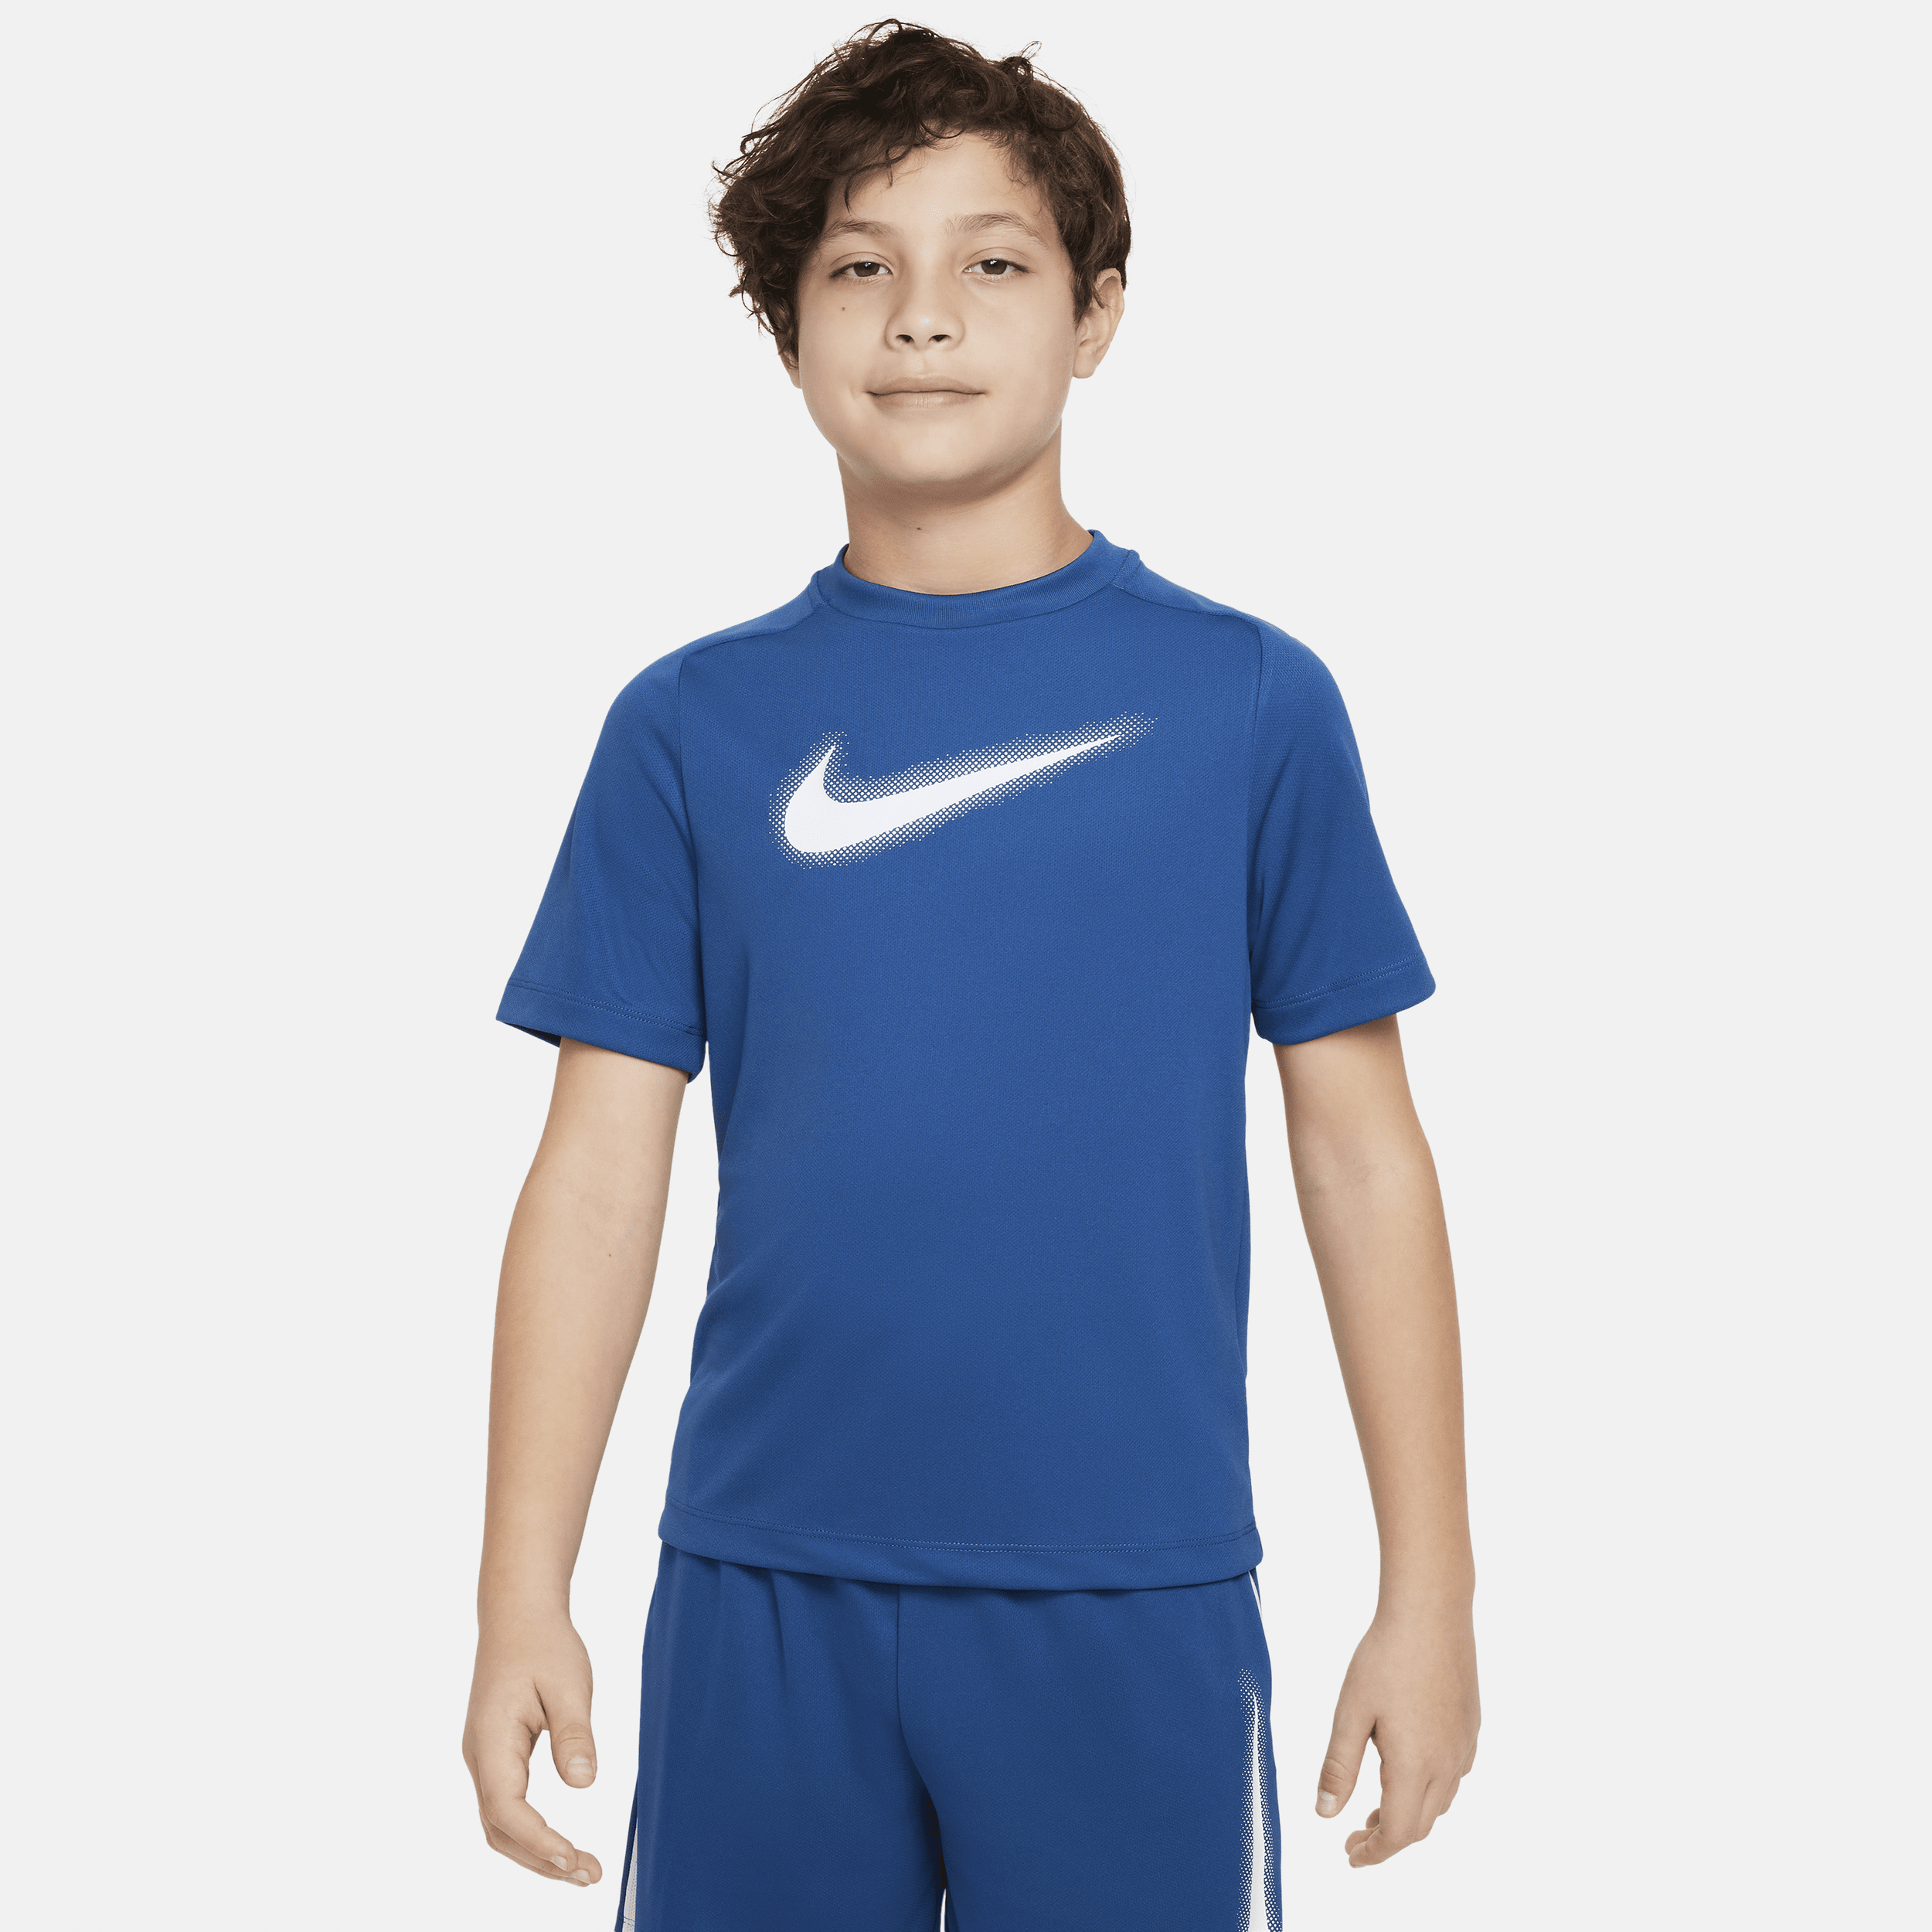 Nike Multi Dri-FIT trainingstop met graphic voor jongens Blauw